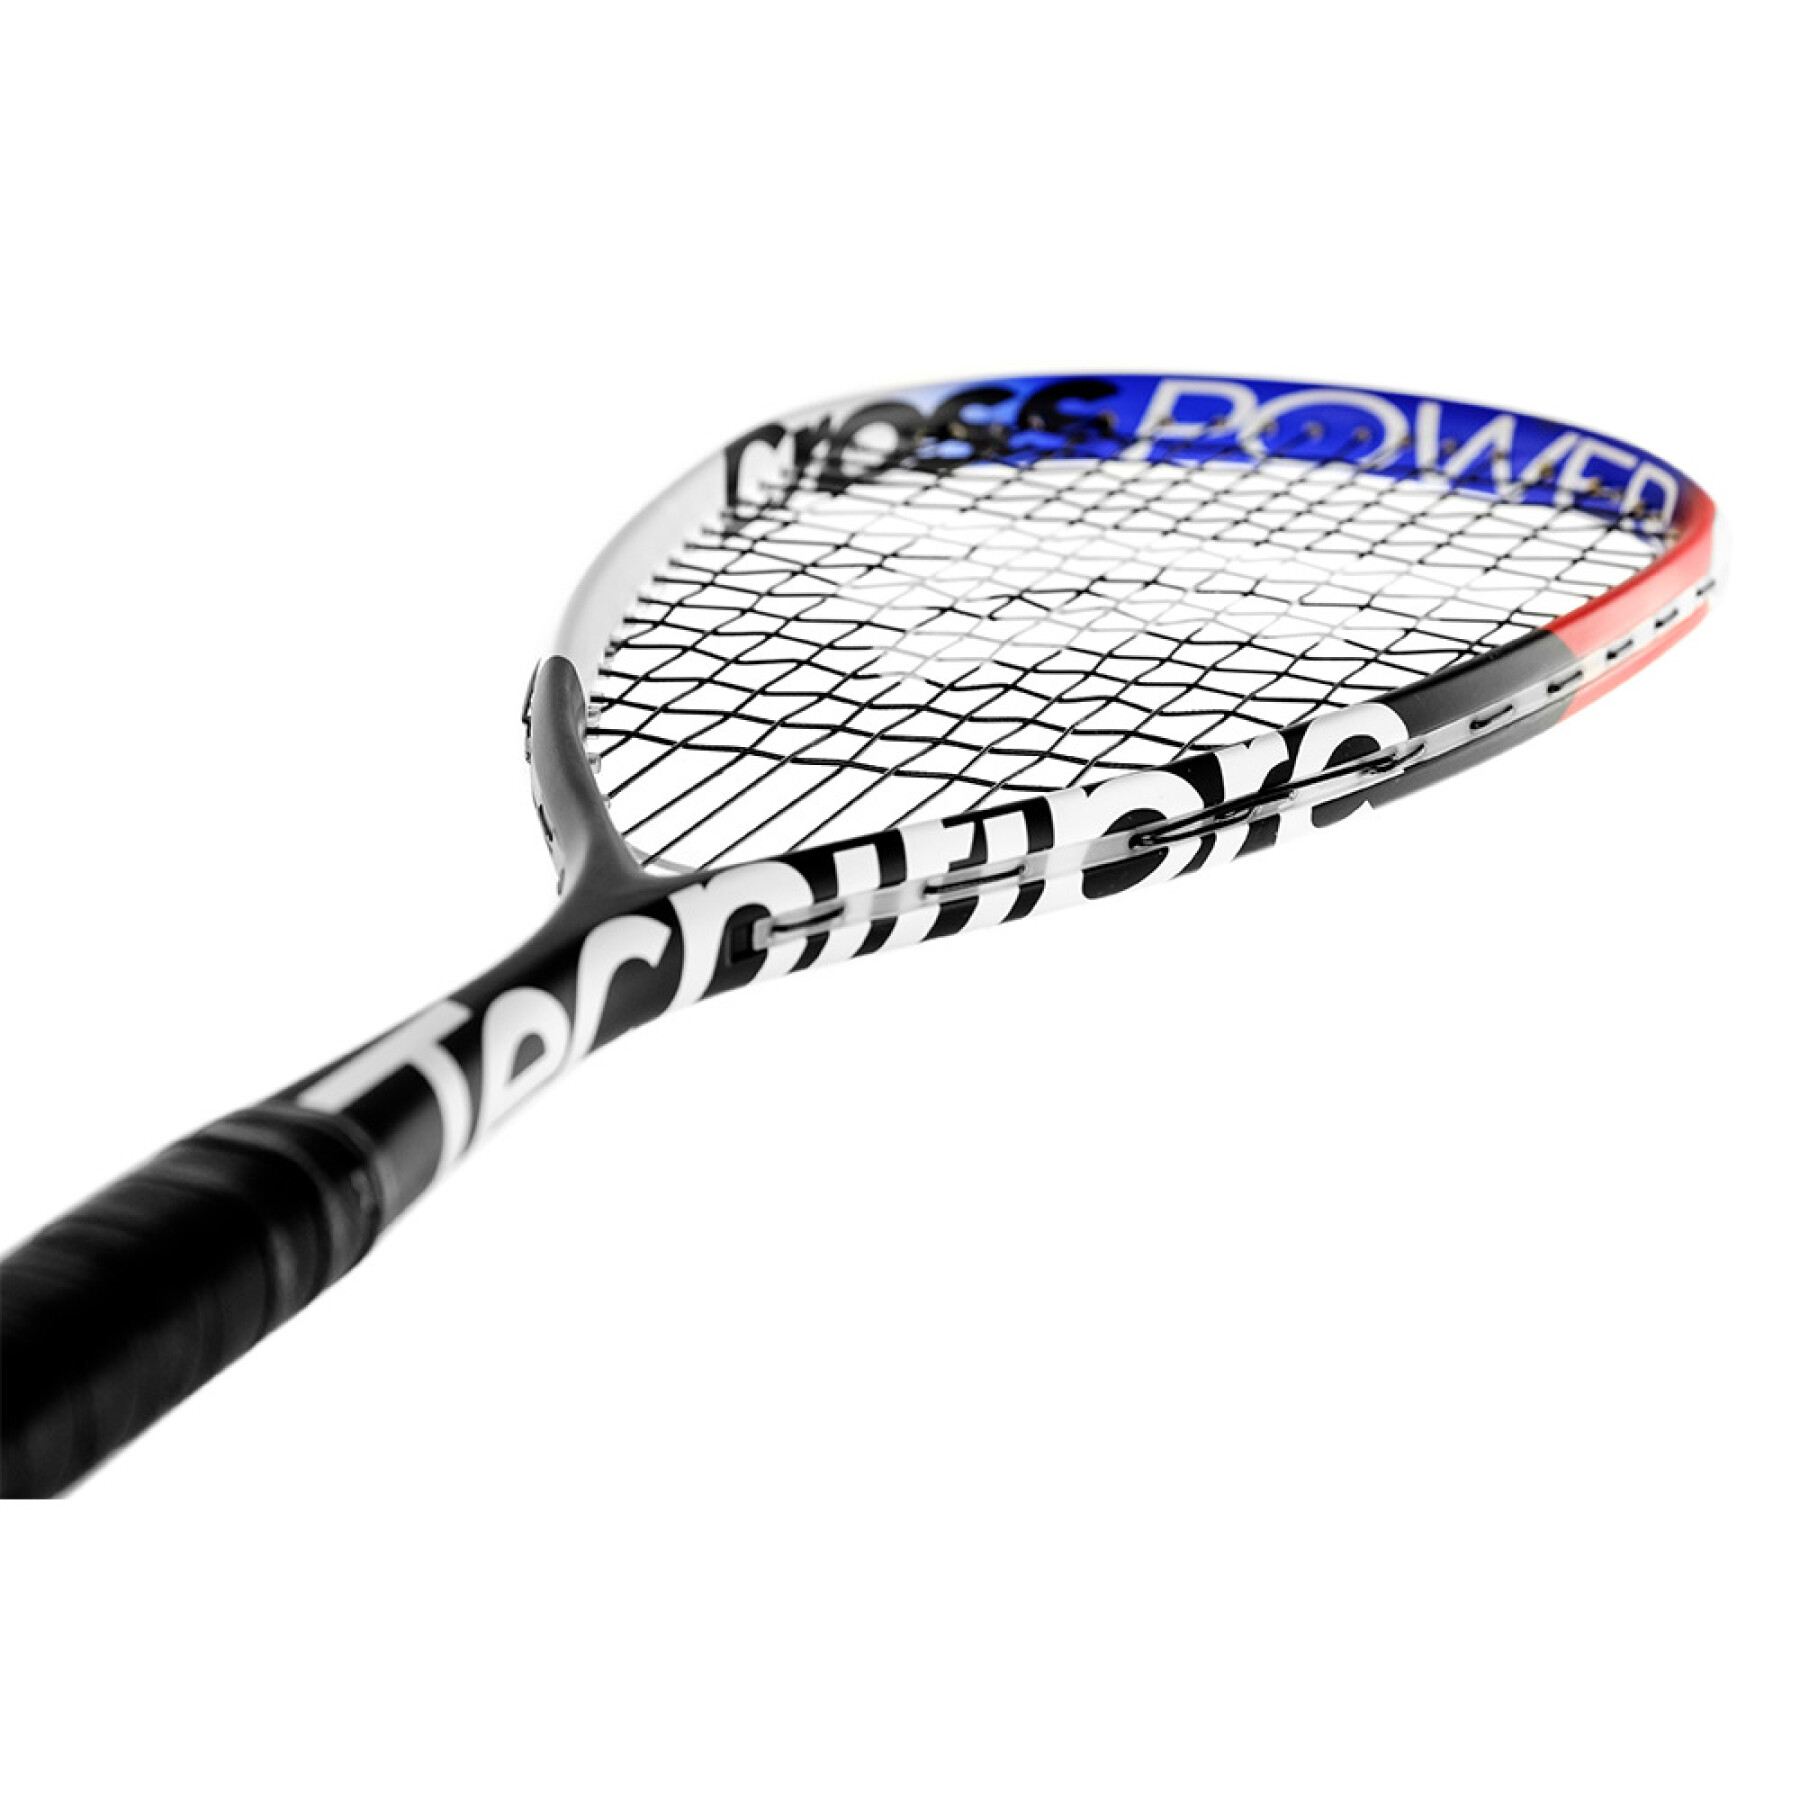 Squash racket Tecnifibre Cross Power 23